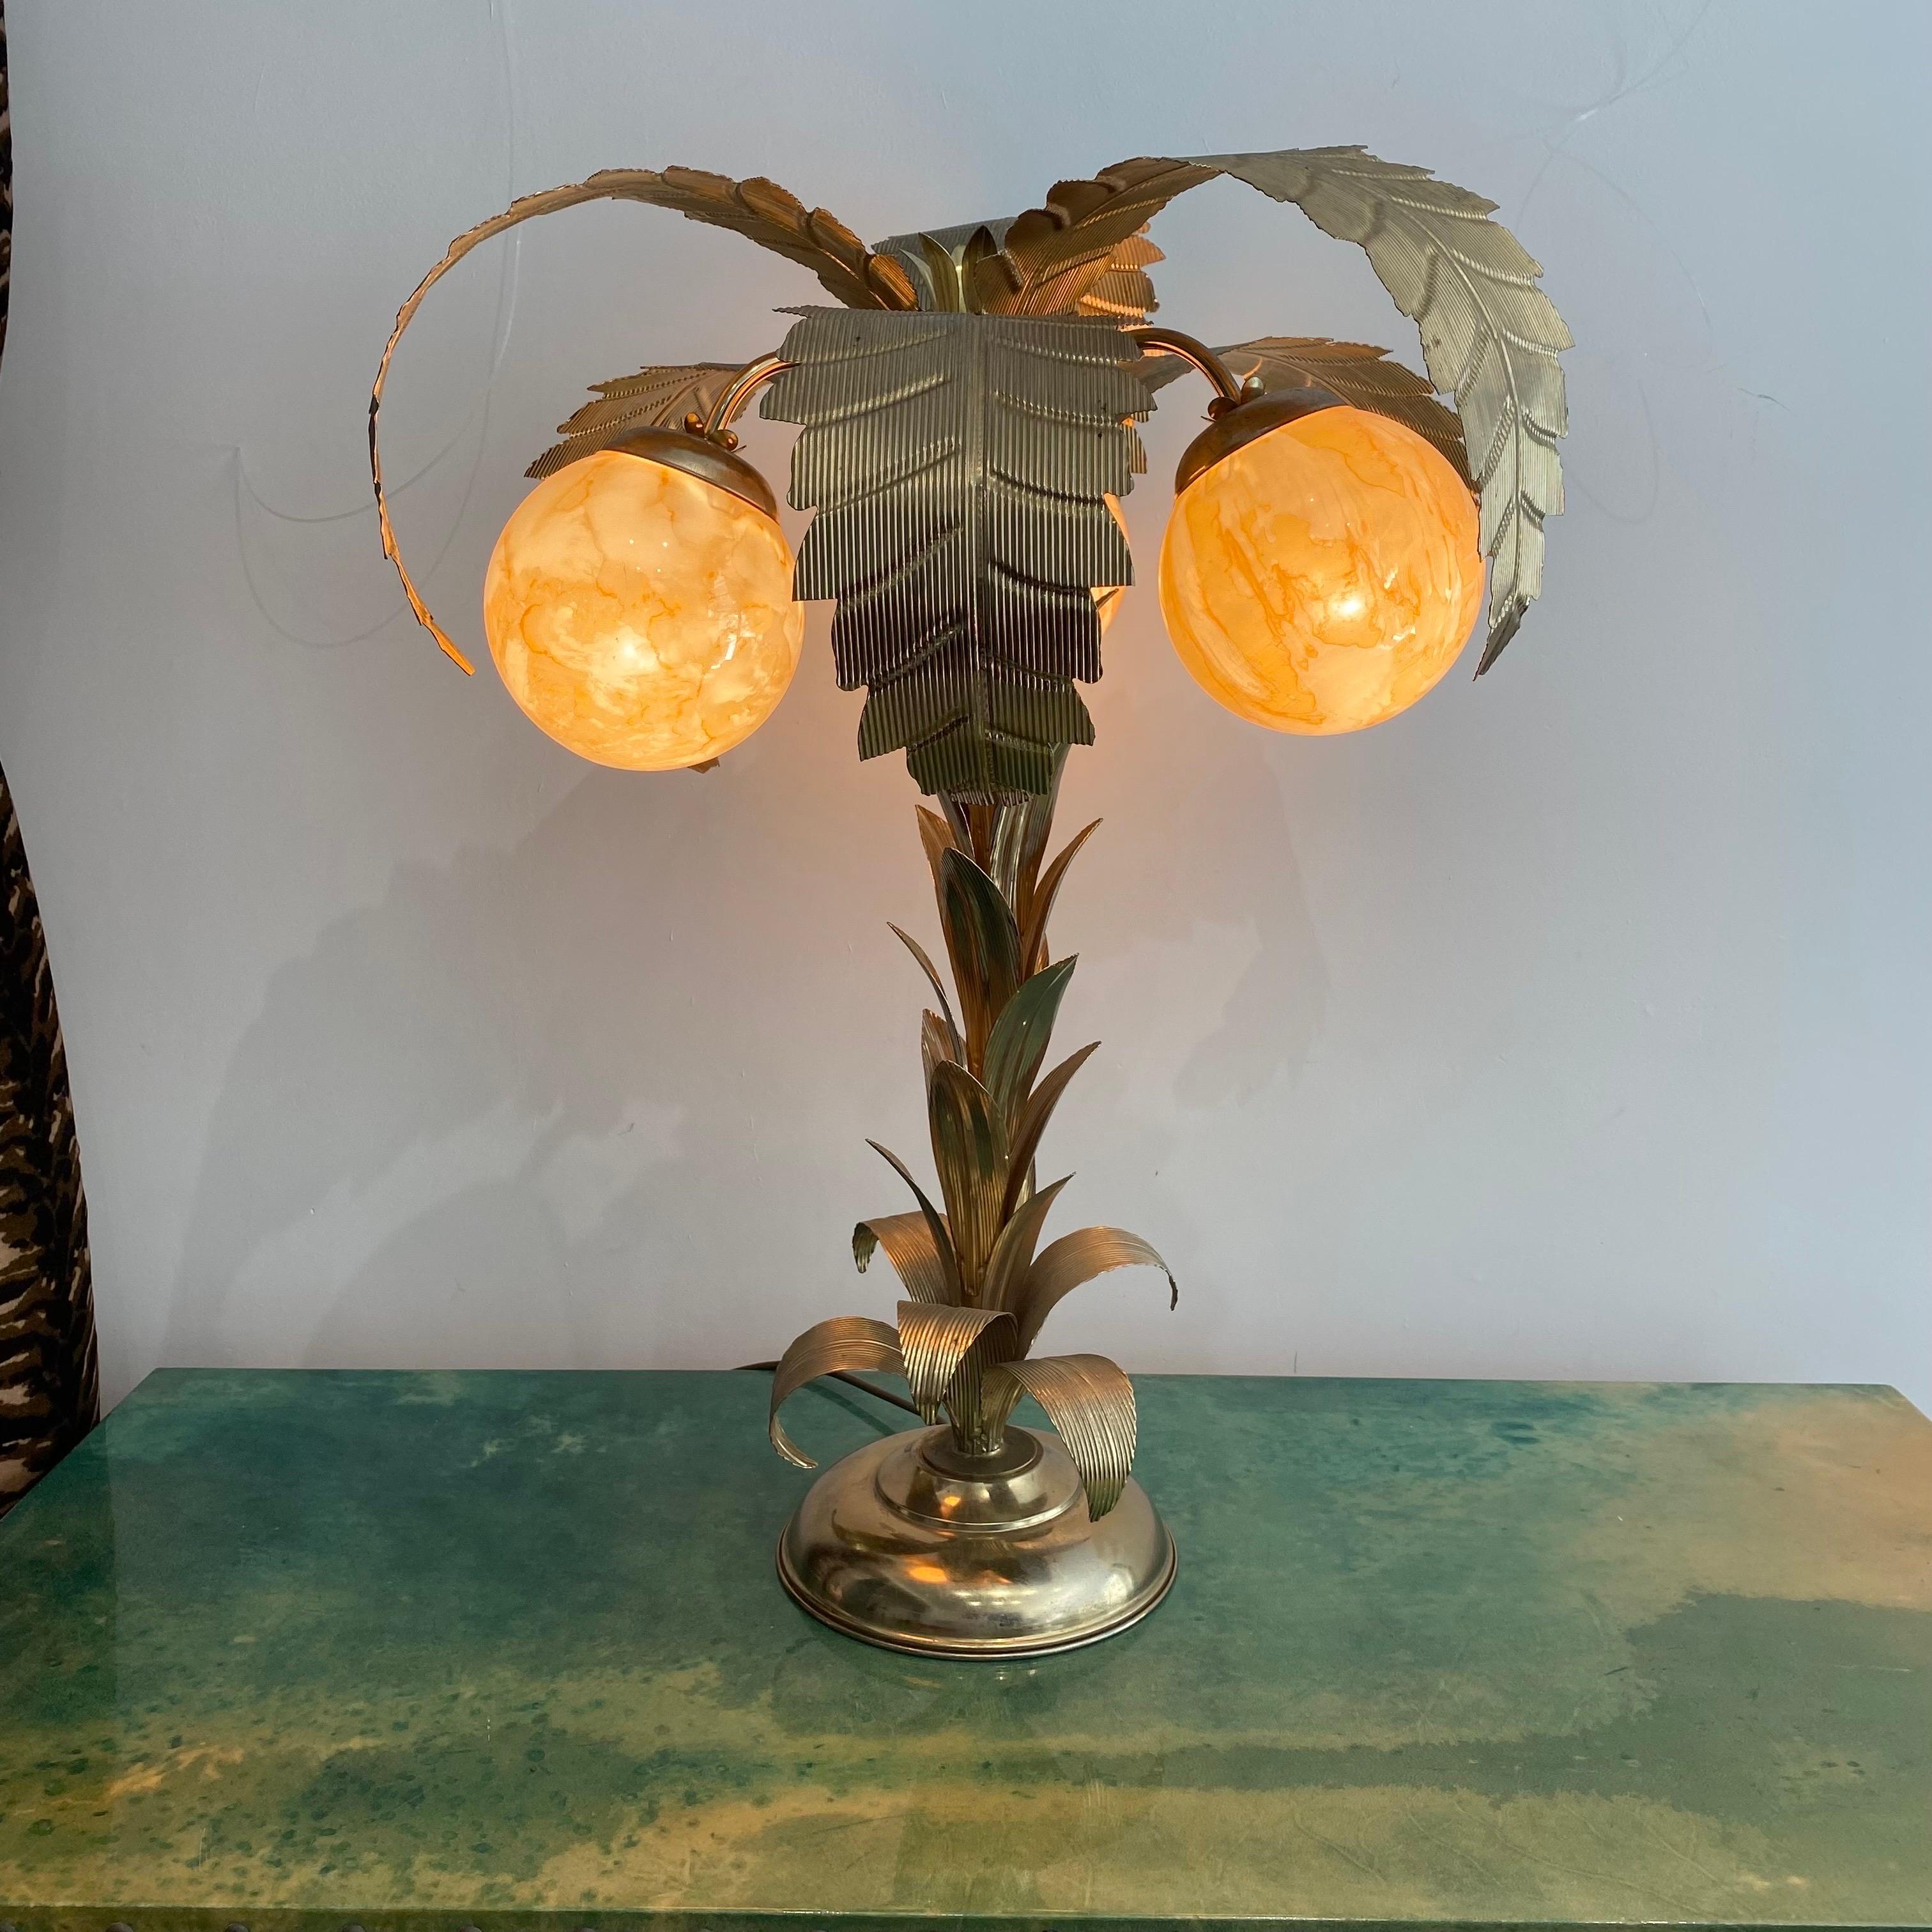 Cette rare lampe à poser en forme de palmier des années 1970, en laiton plaqué, de style art déco, rappelant la Maison Jensen, est une pièce vraiment unique et captivante. Cette lampe à poser tropicale respire l'élégance et le charme grâce à son